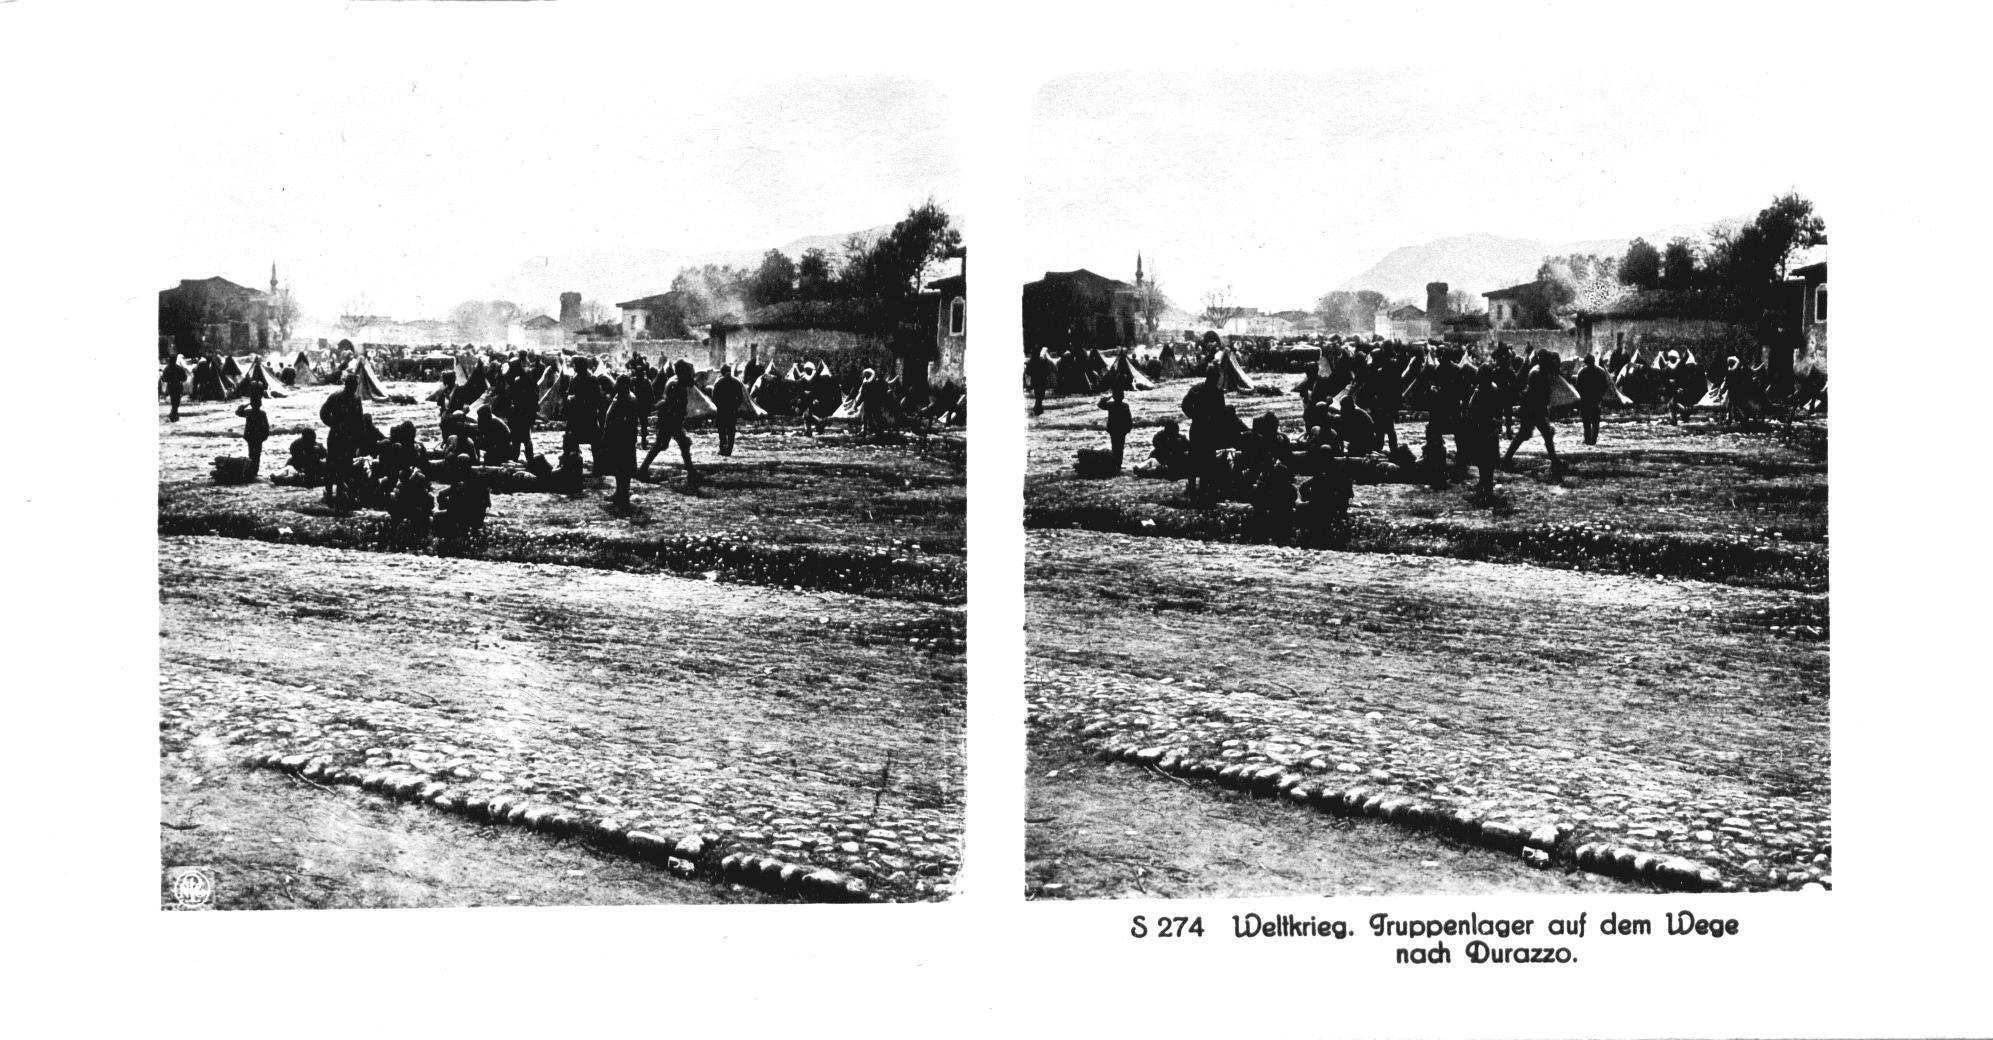 "Truppenlager auf dem Wege nach Durazzo" - Troop camp on the way to Durazzo